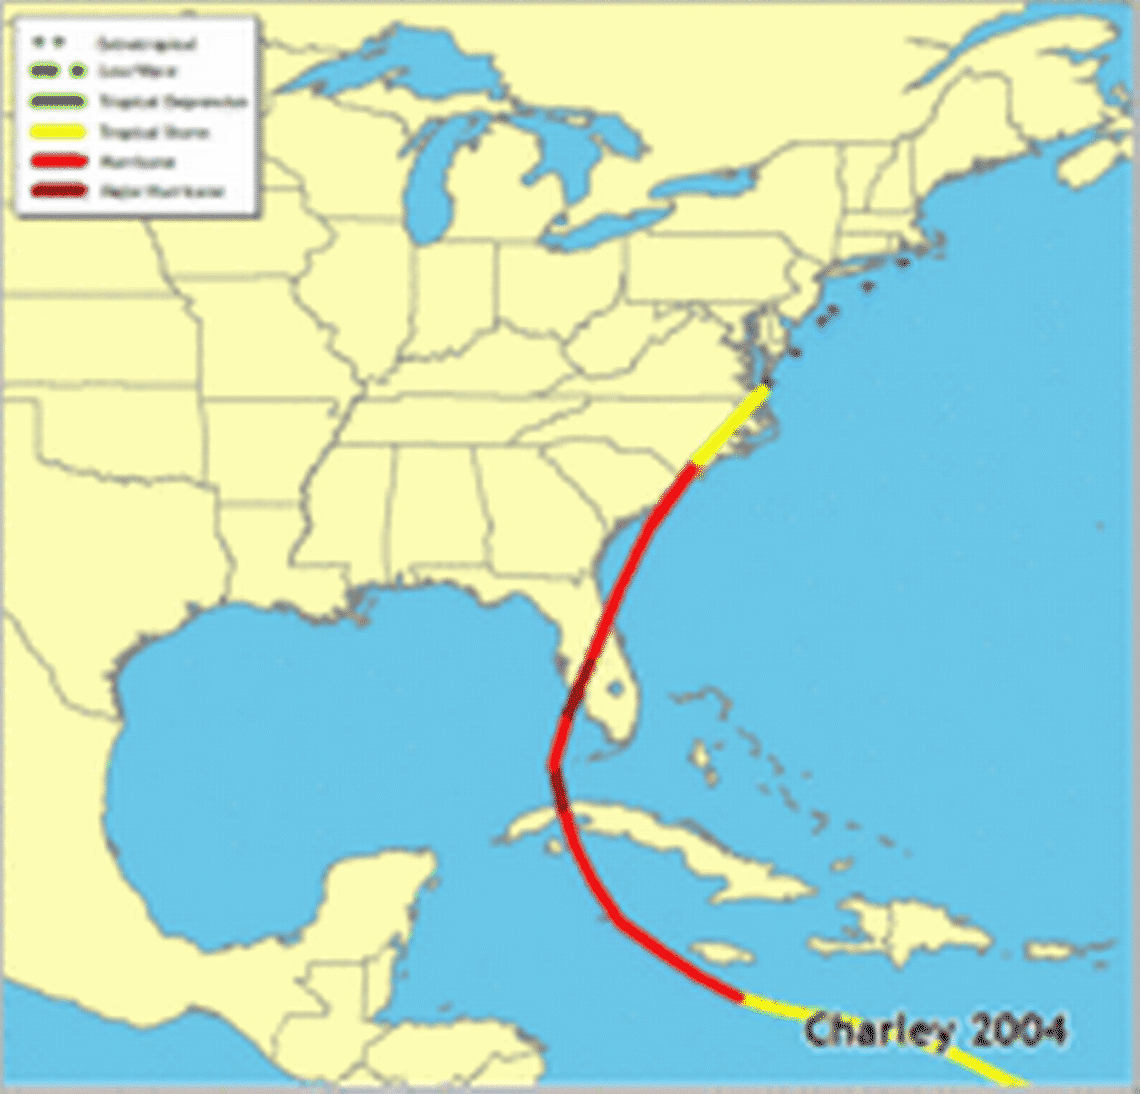 Hurricane Charley in 2004.